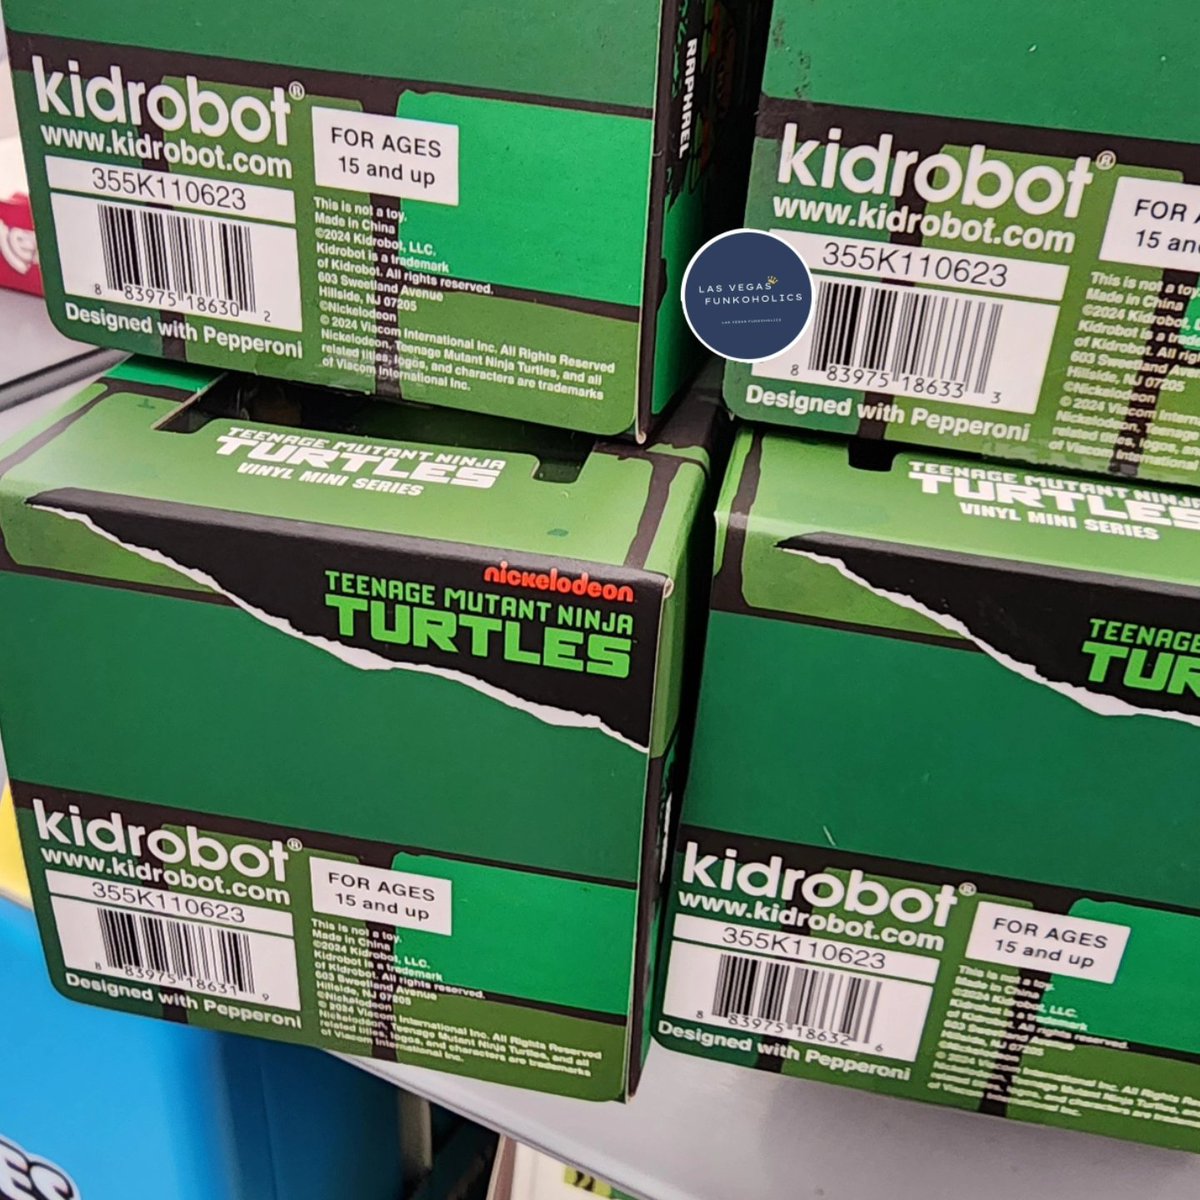 Spotted @Walmart @Kidrobot Teenage Mutant Ninja Turtles Vinyl Mini Series. 

#teenagemutantninjaturtles #tmnt #Michaelangelo #raphael #Leonardo #donatello #tmnt #kidrobot #tmnttoys #toyphotography #walmartfind  #teenagemutantninjaturtlescollector #tmntcollector